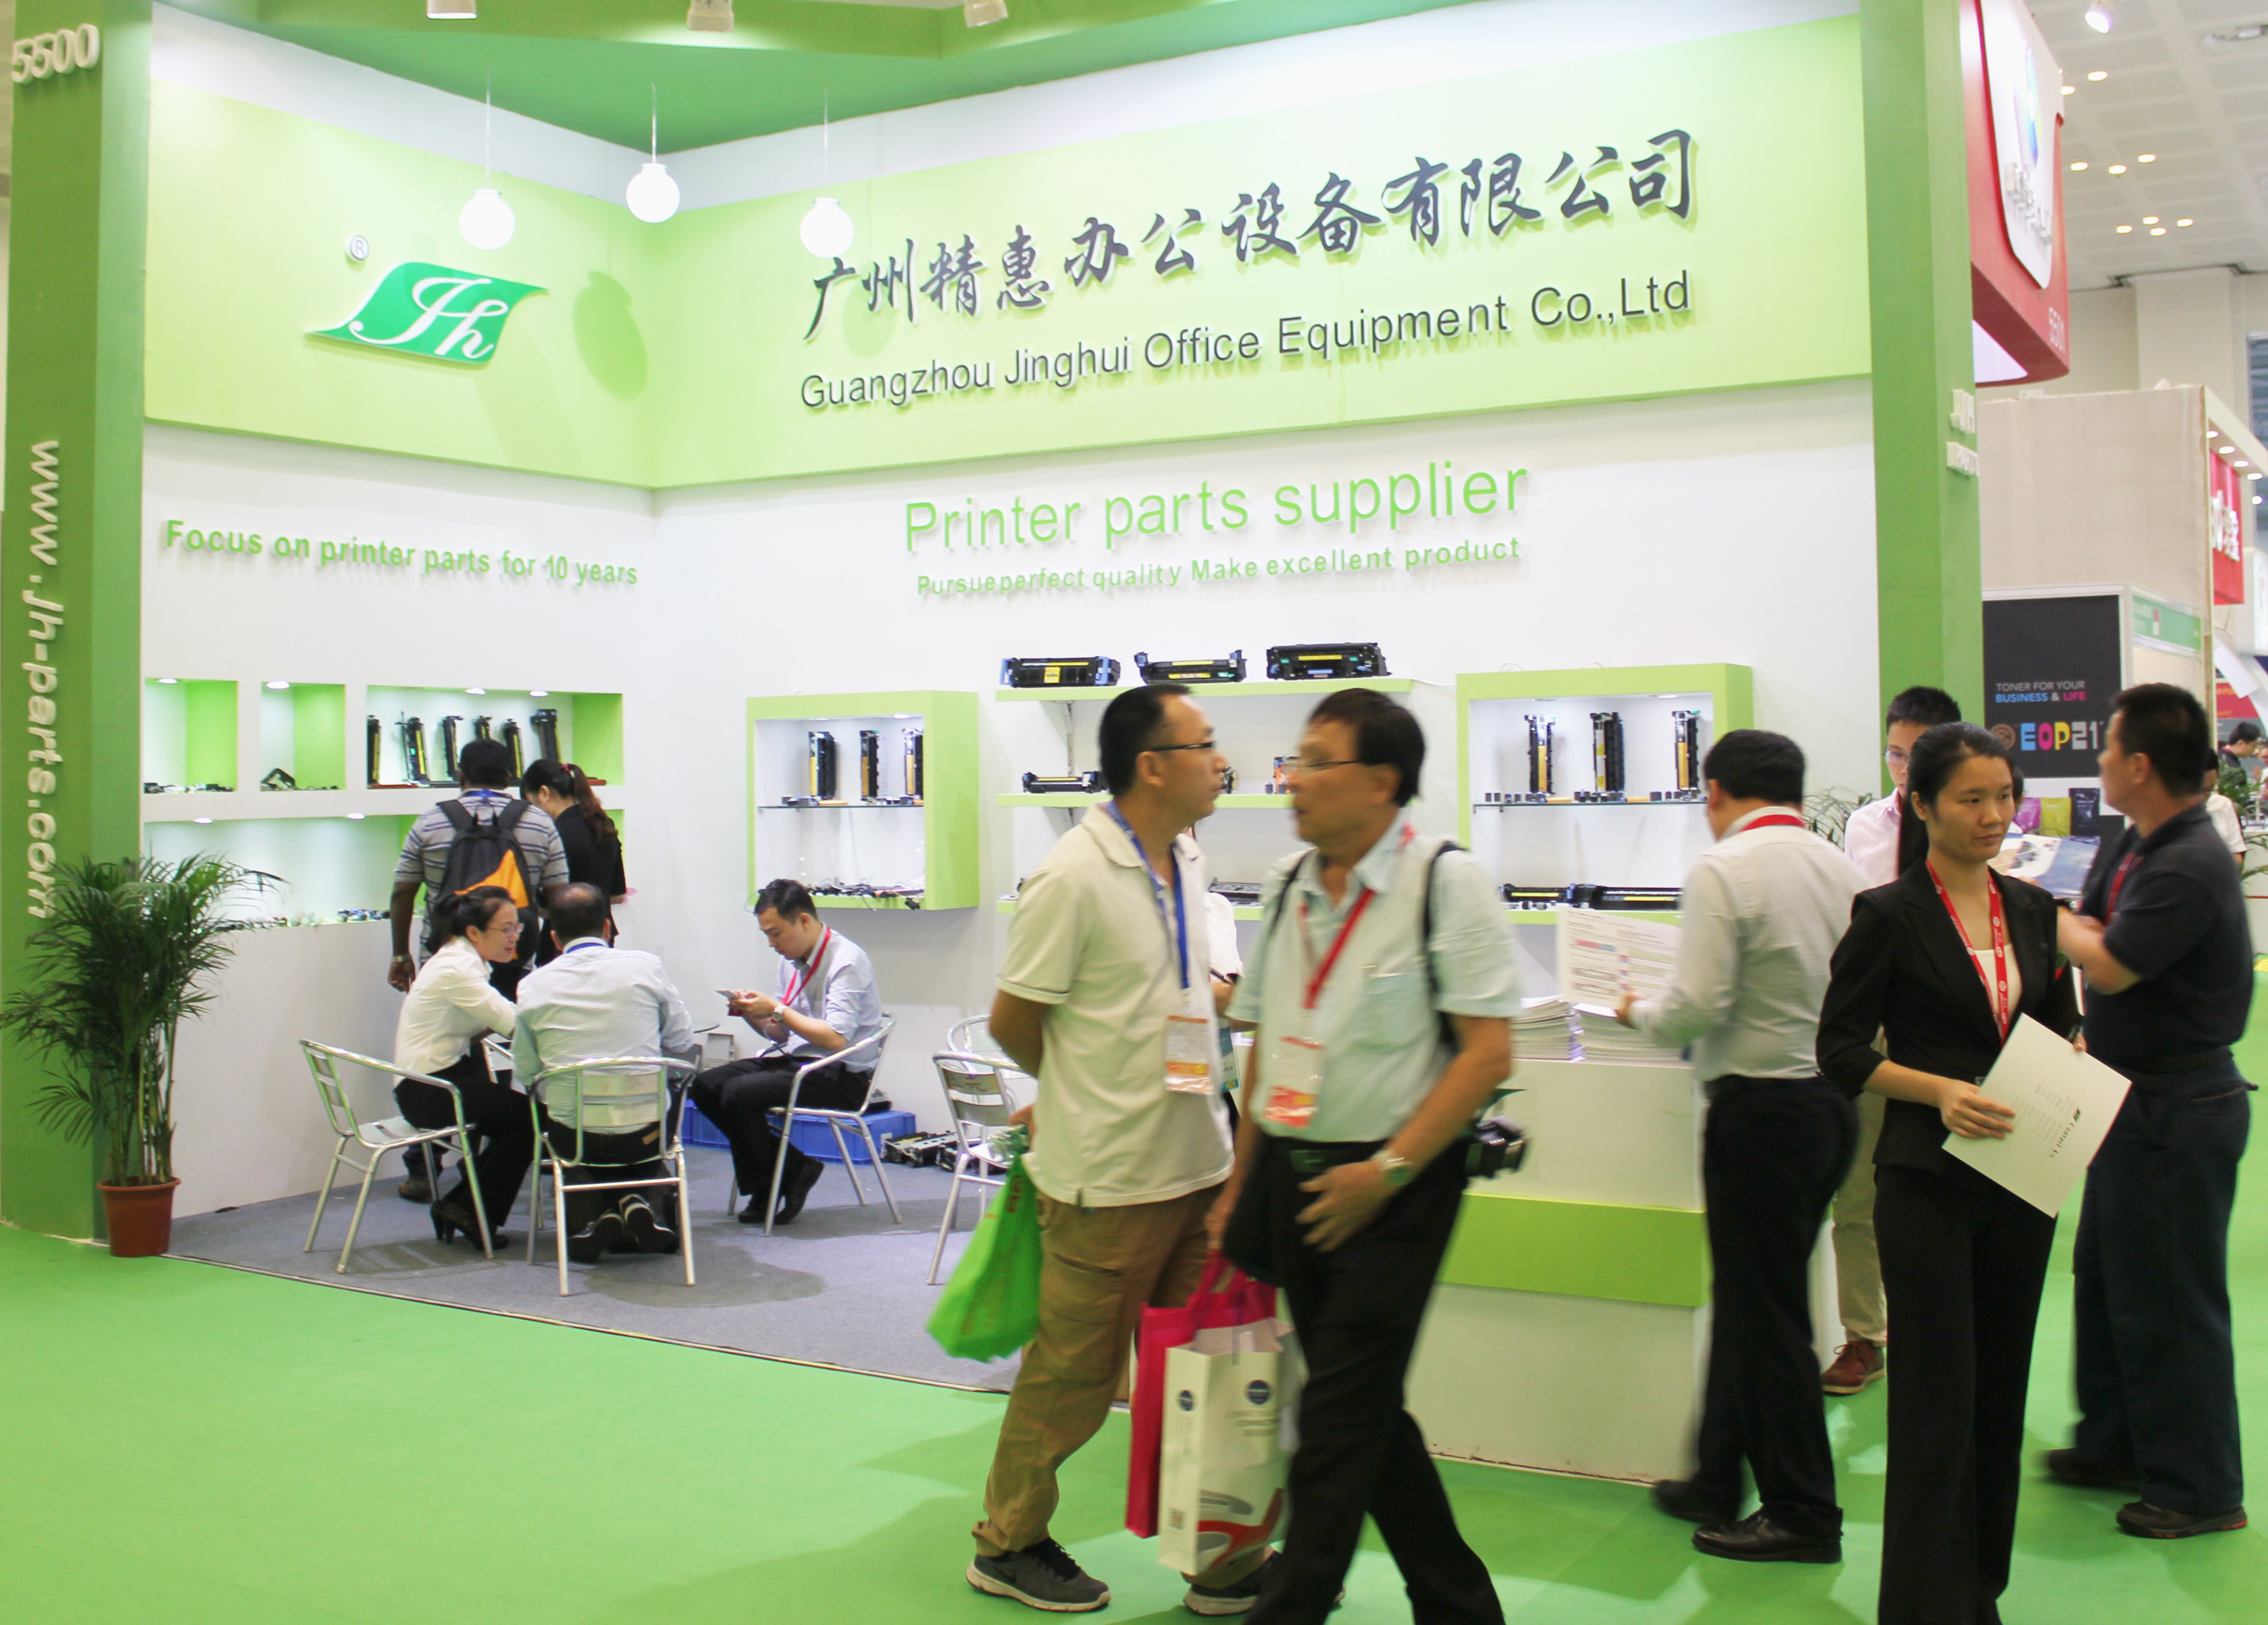 Guangzhou Jinghui Printer Parts in Remax 2015 in Zhuhai